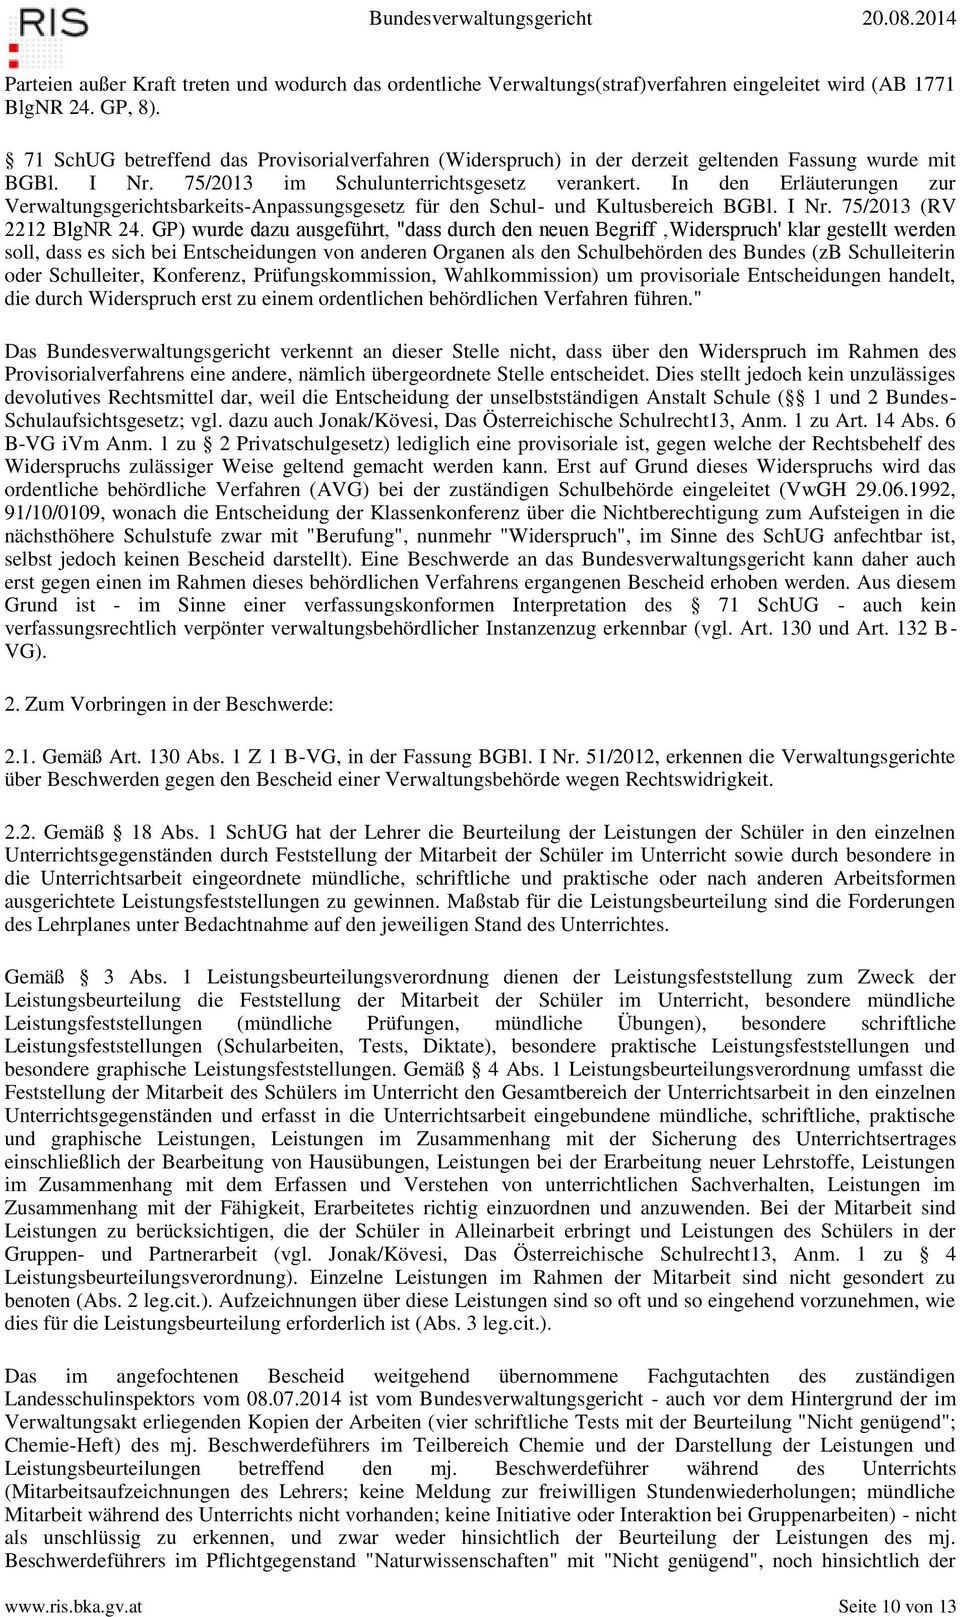 In den Erläuterungen zur Verwaltungsgerichtsbarkeits-Anpassungsgesetz für den Schul- und Kultusbereich BGBl. I Nr. 75/2013 (RV 2212 BlgNR 24.